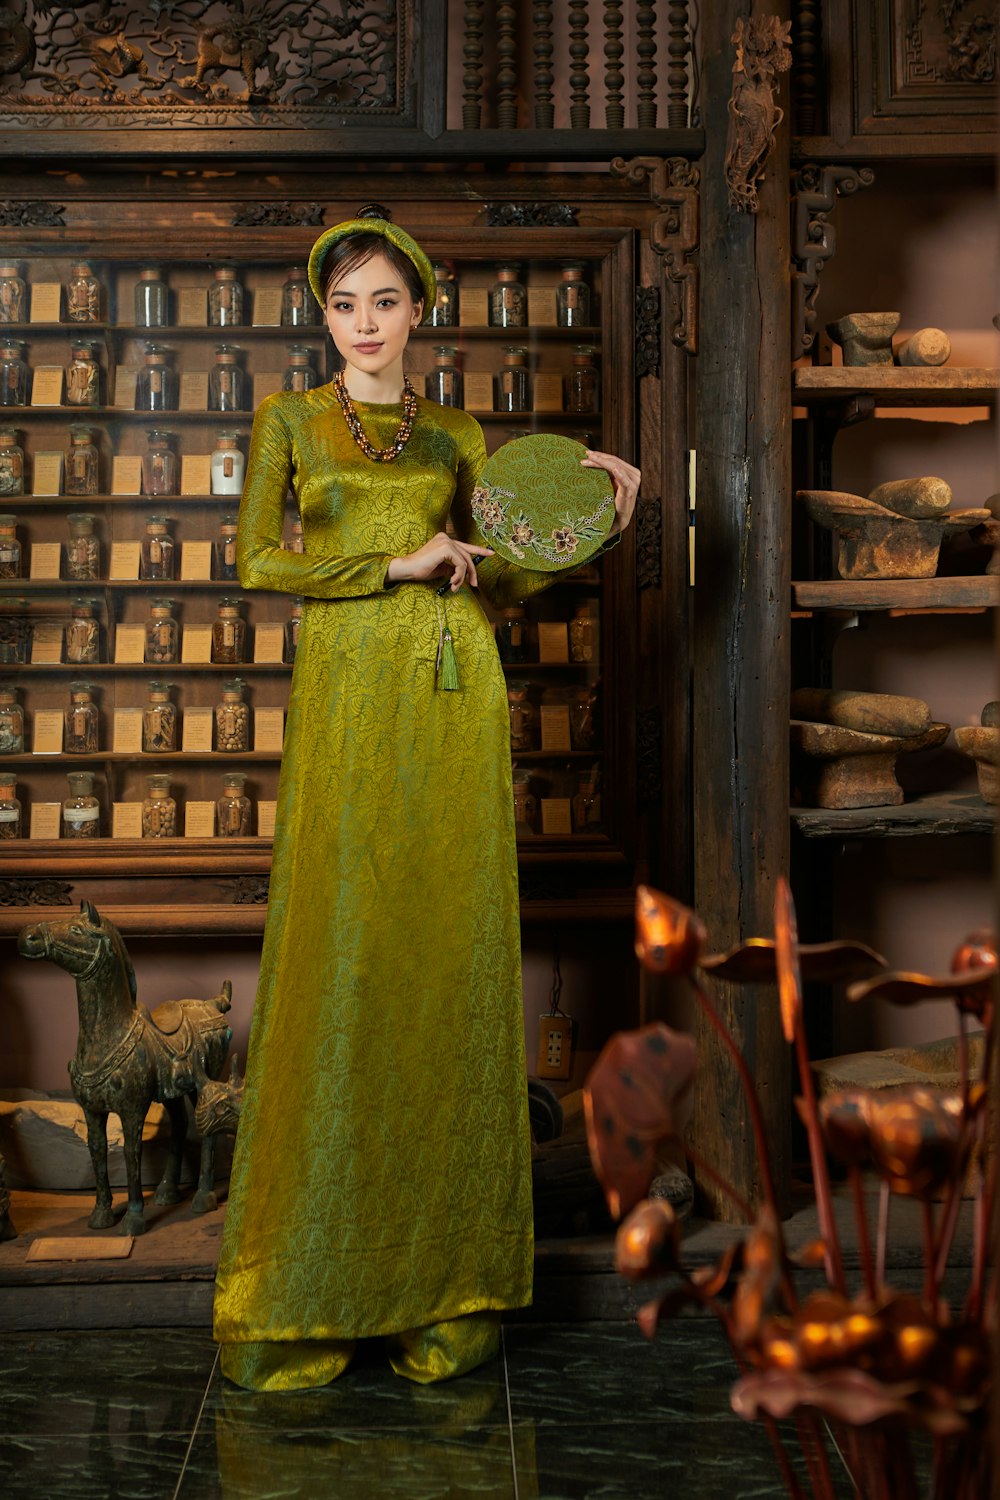 a woman in a green dress holding a fan